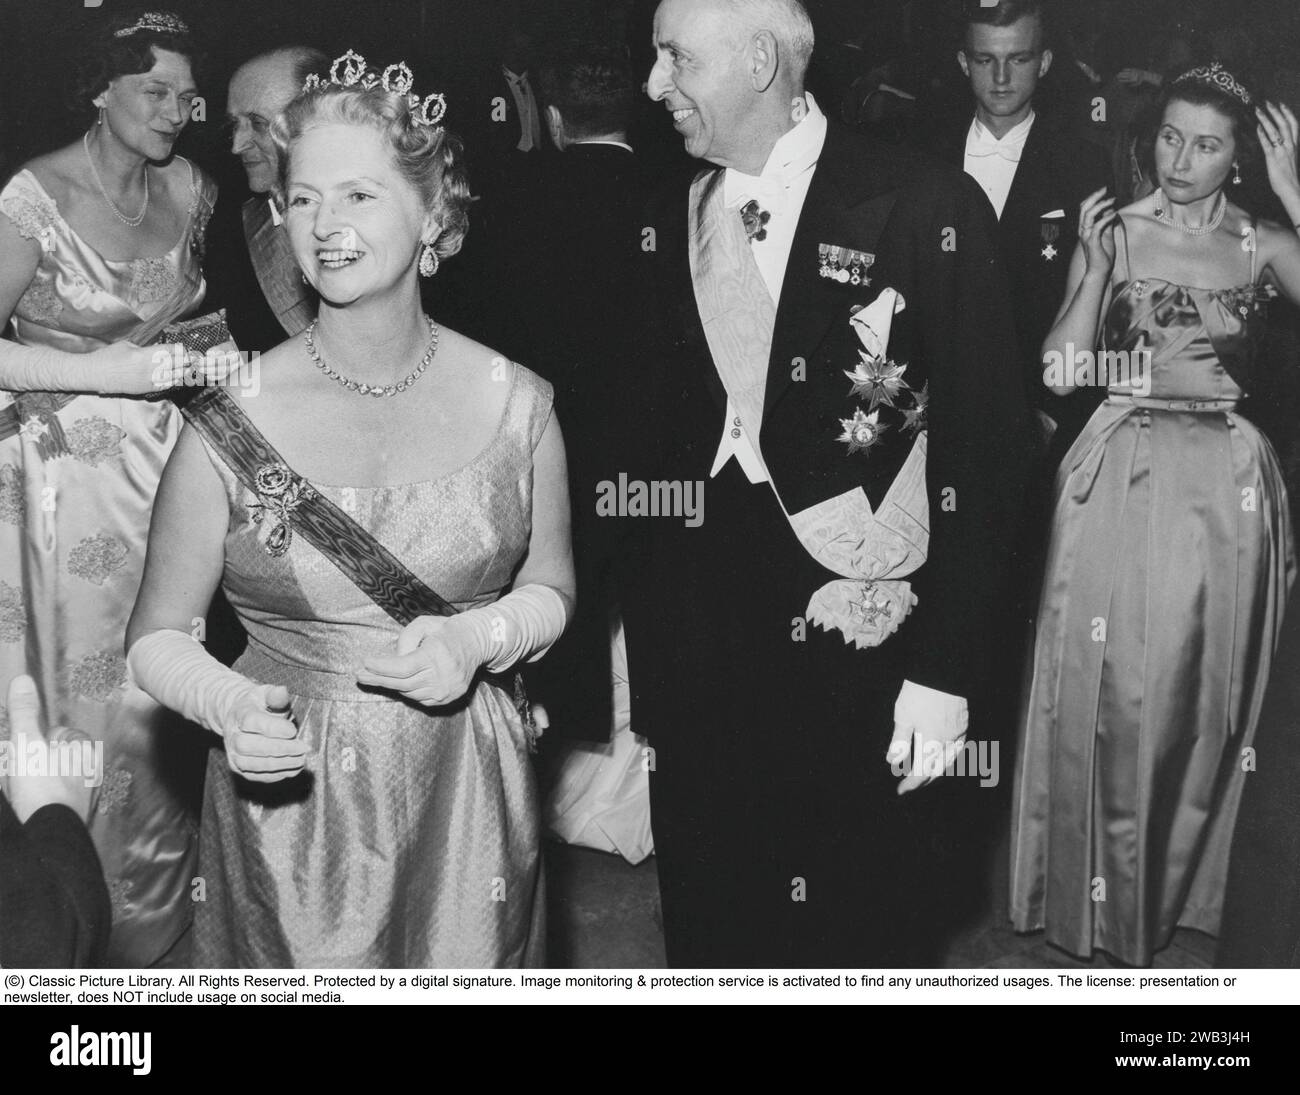 Prinzessin Sibylla von Sachsen-Coburg und Gotha. januar 1908 bis 28. november 1972. Sie war Mitglied der schwedischen Königsfamilie und Mutter des heutigen schwedischen Königs Carl XVI. Gustaf. Sie wurde schwedische Prinzessin, als sie 1932 den Herzog Gustaf Adolf von Västerbotten heiratete. Sie hatte damit die Aussicht, eines Tages Königin zu werden, aber der Prinz wurde 1947 bei einem Flugzeugabsturz getötet und lebte nicht mehr auf dem schwedischen Thron. Ihr Sohn wurde im Jahr nach ihrem Tod König. 1961 in einem Diadem von E. Wolff & Co. Dargestellt, war es ein Geschenk des Herzogs und der Herzogin von Connaught an ihre Stockfoto